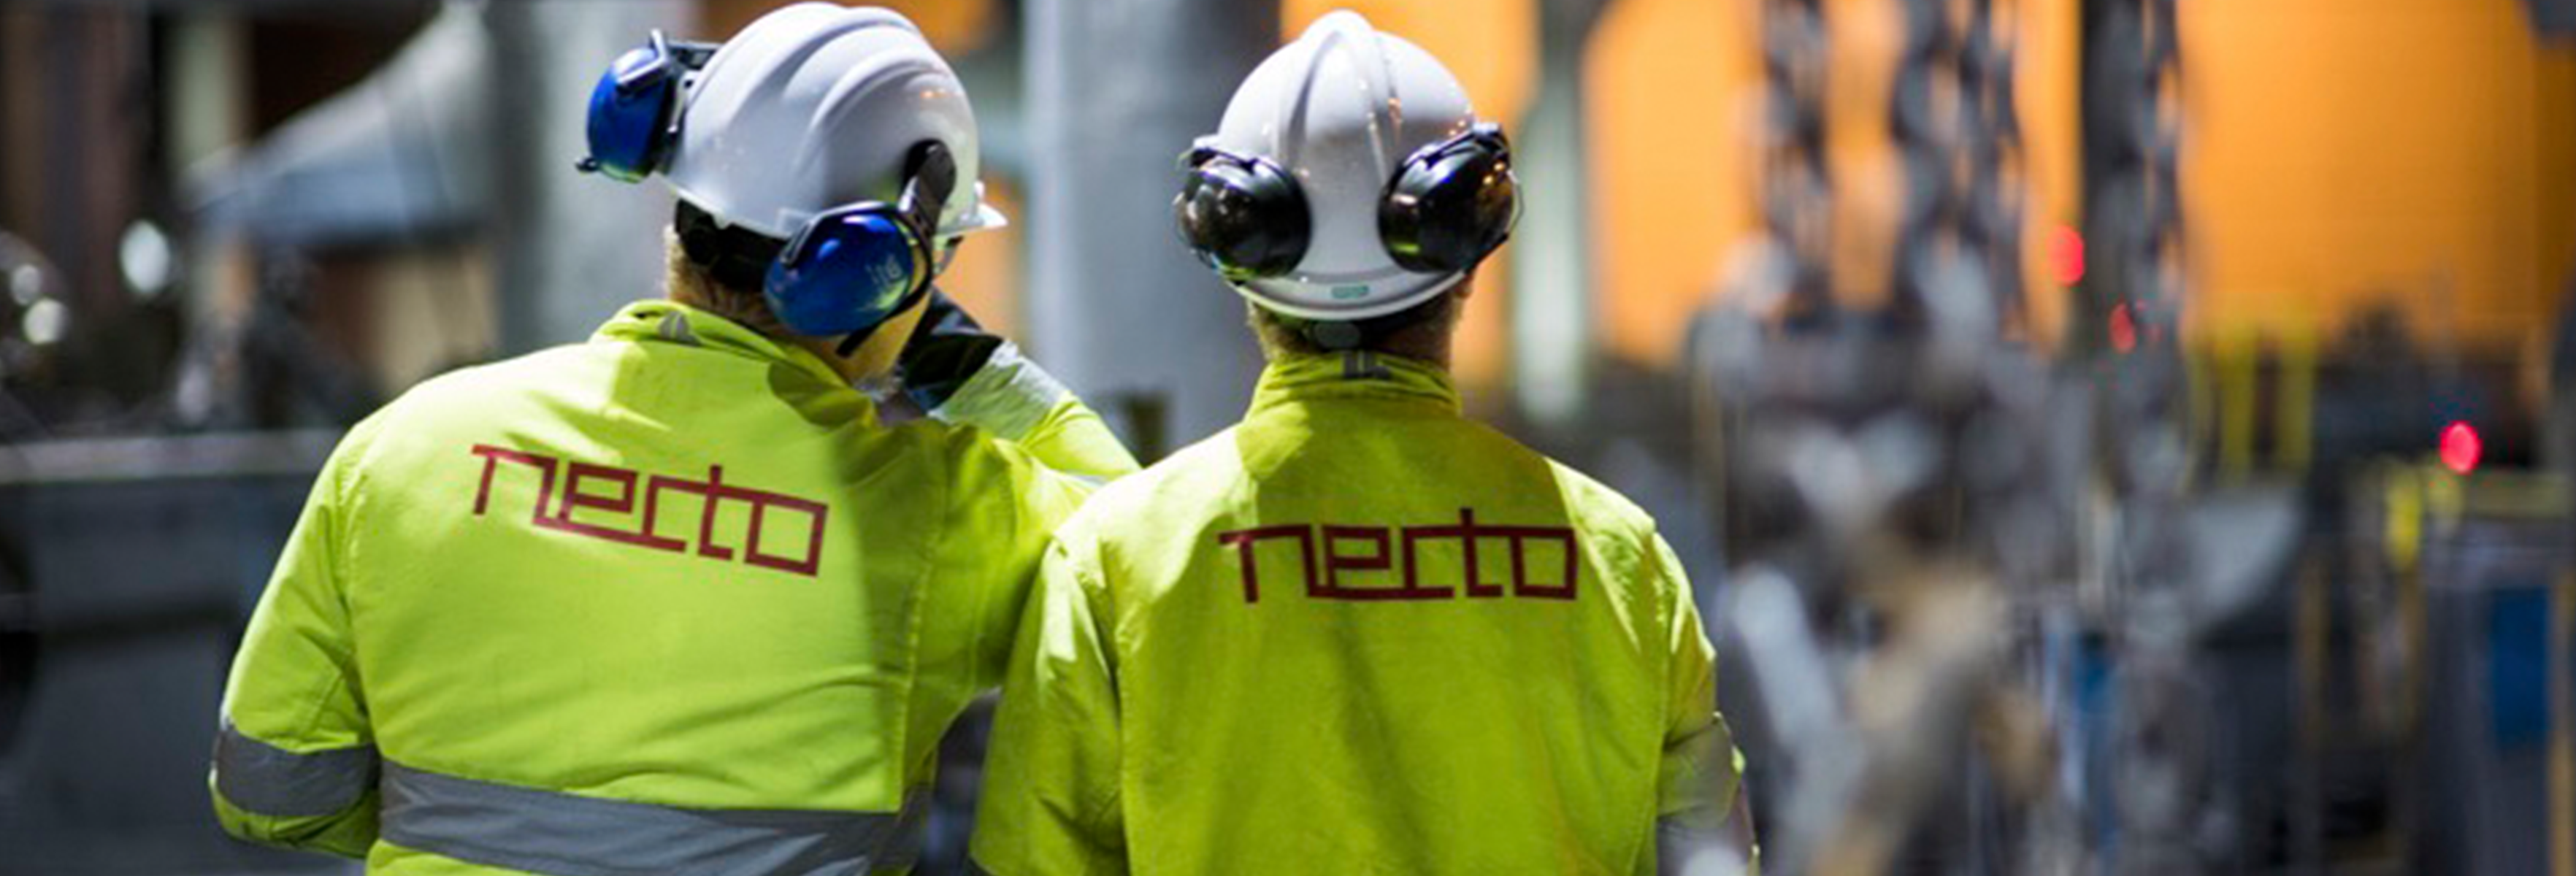 Två män i gula arbetskläder med Necto-logga